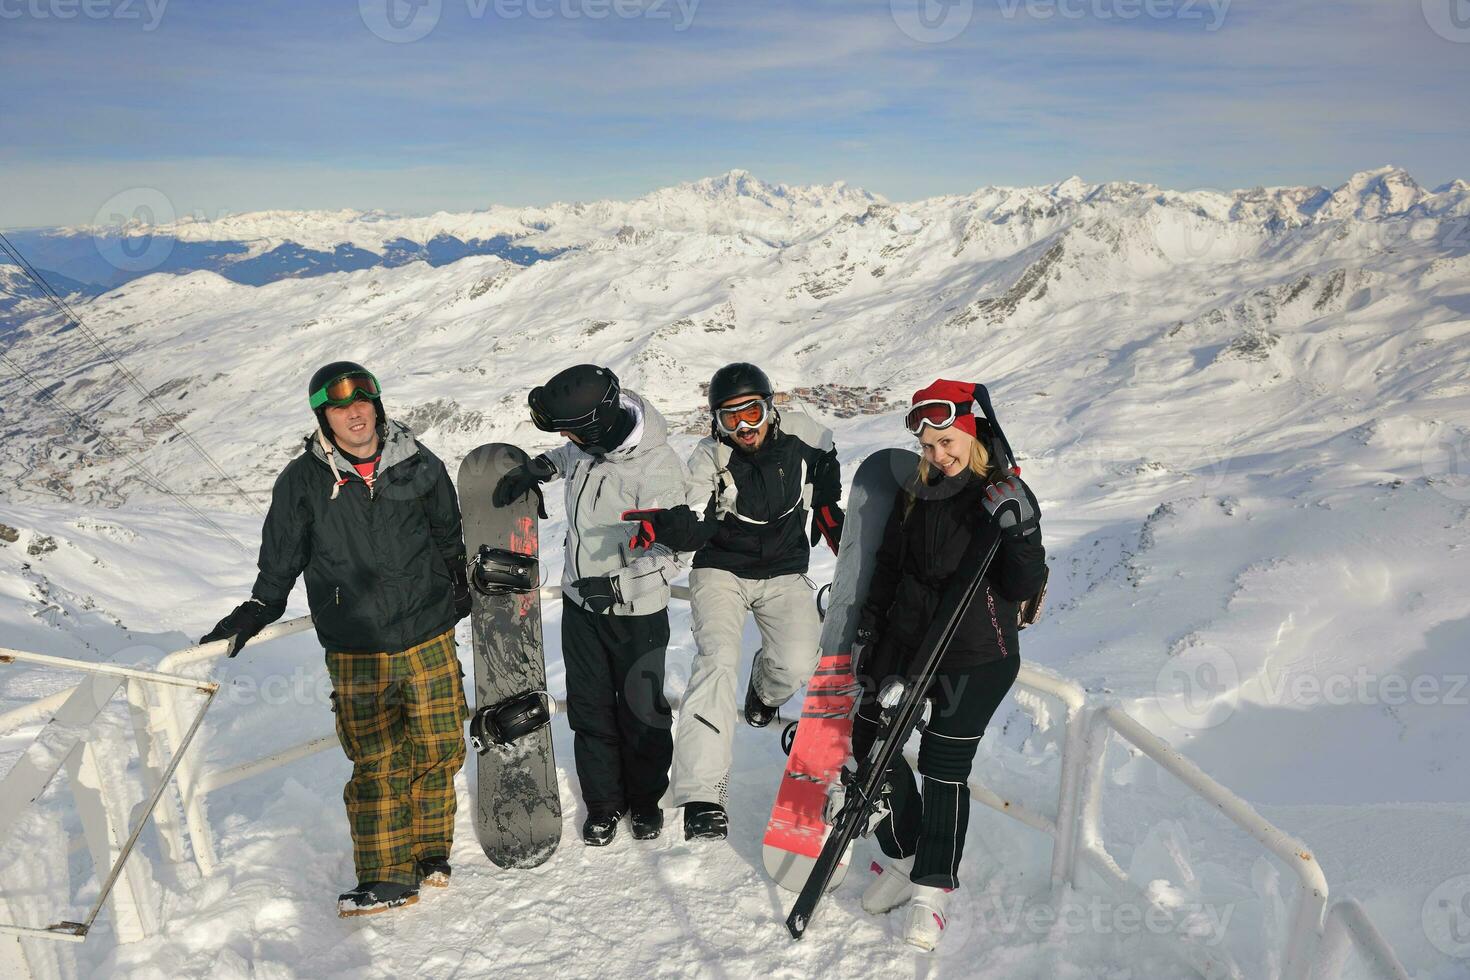 grupo de personas en la nieve en la temporada de invierno foto